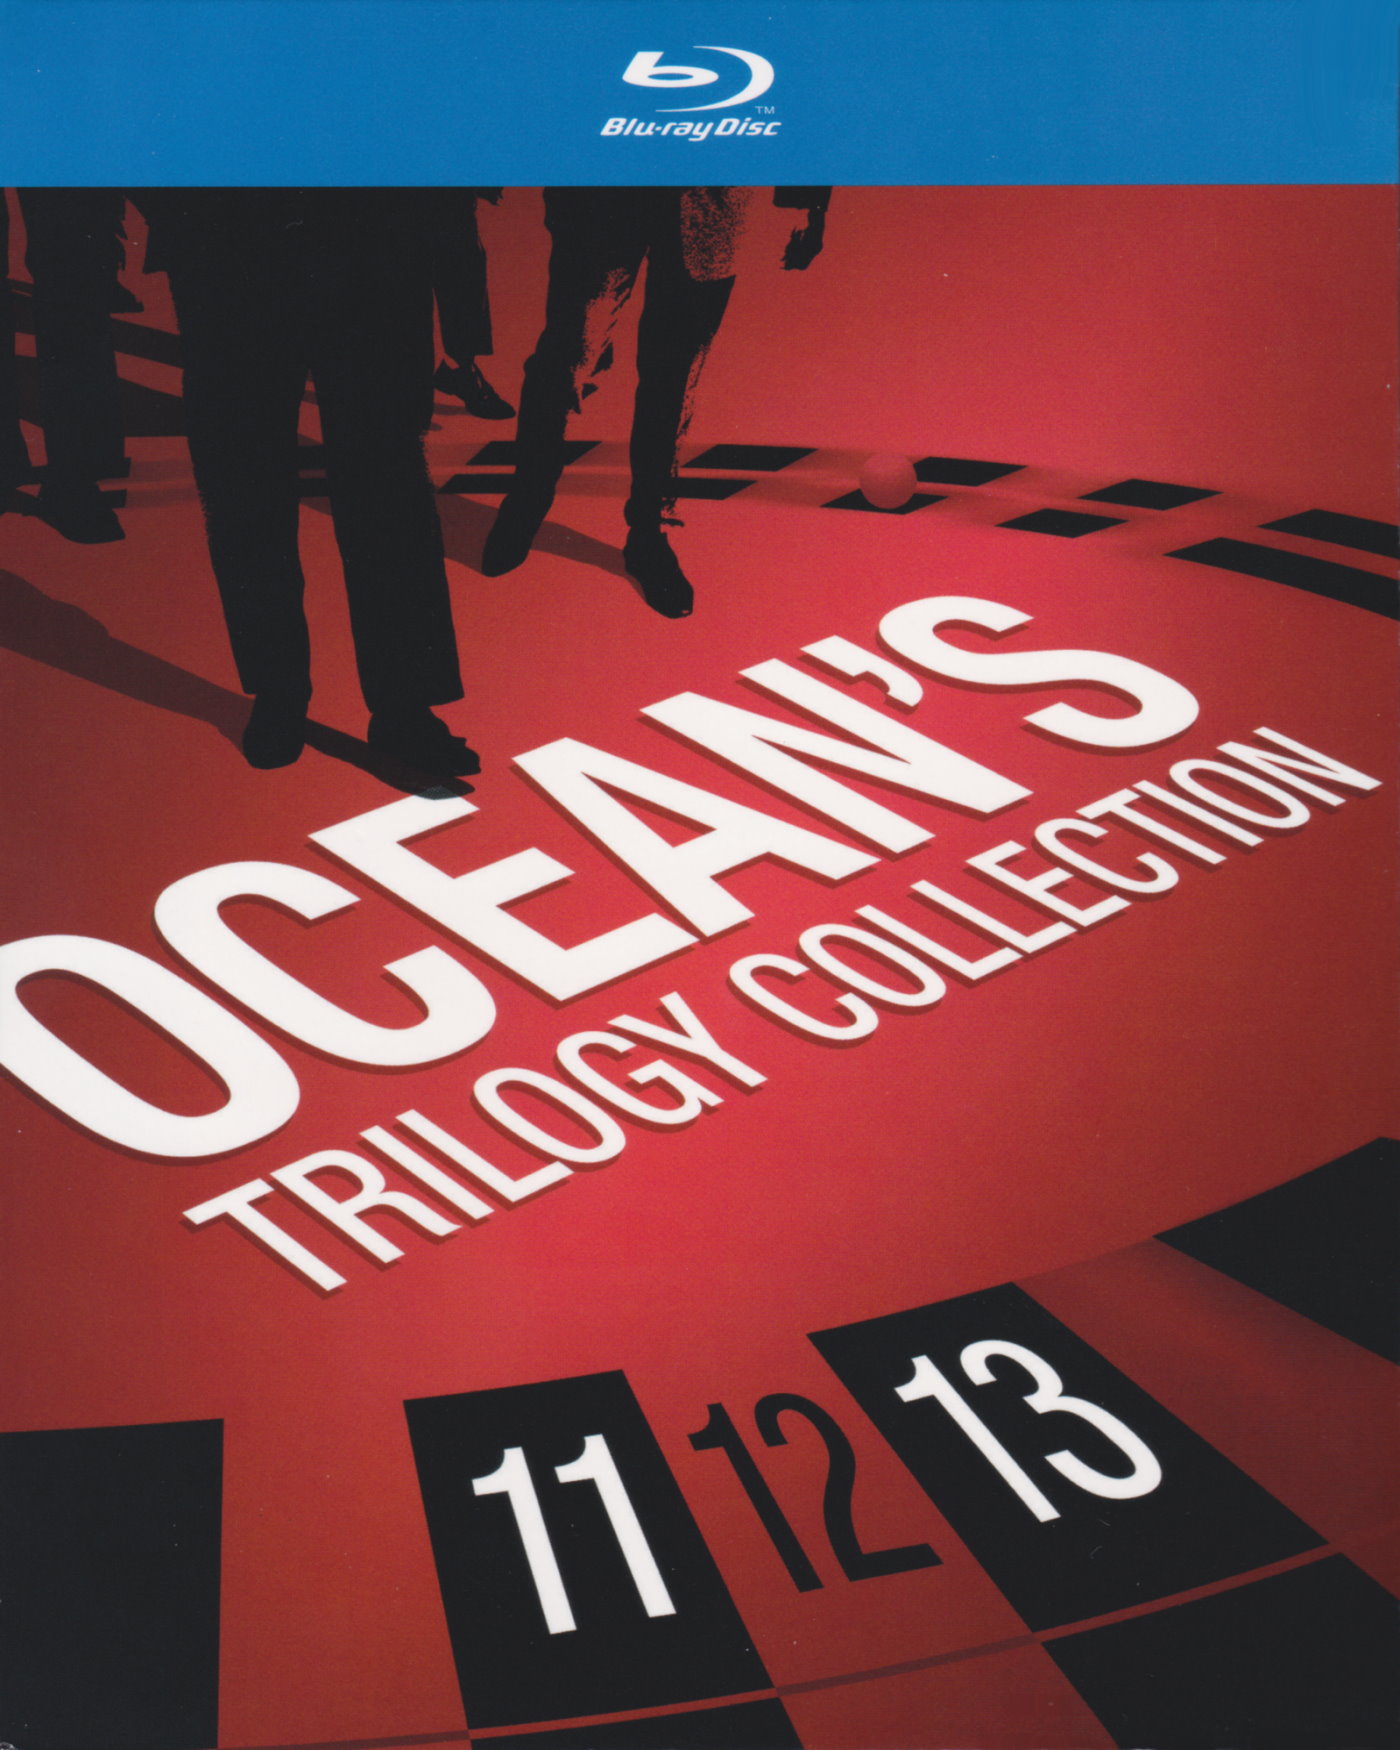 Cover - Ocean's Eleven.jpg